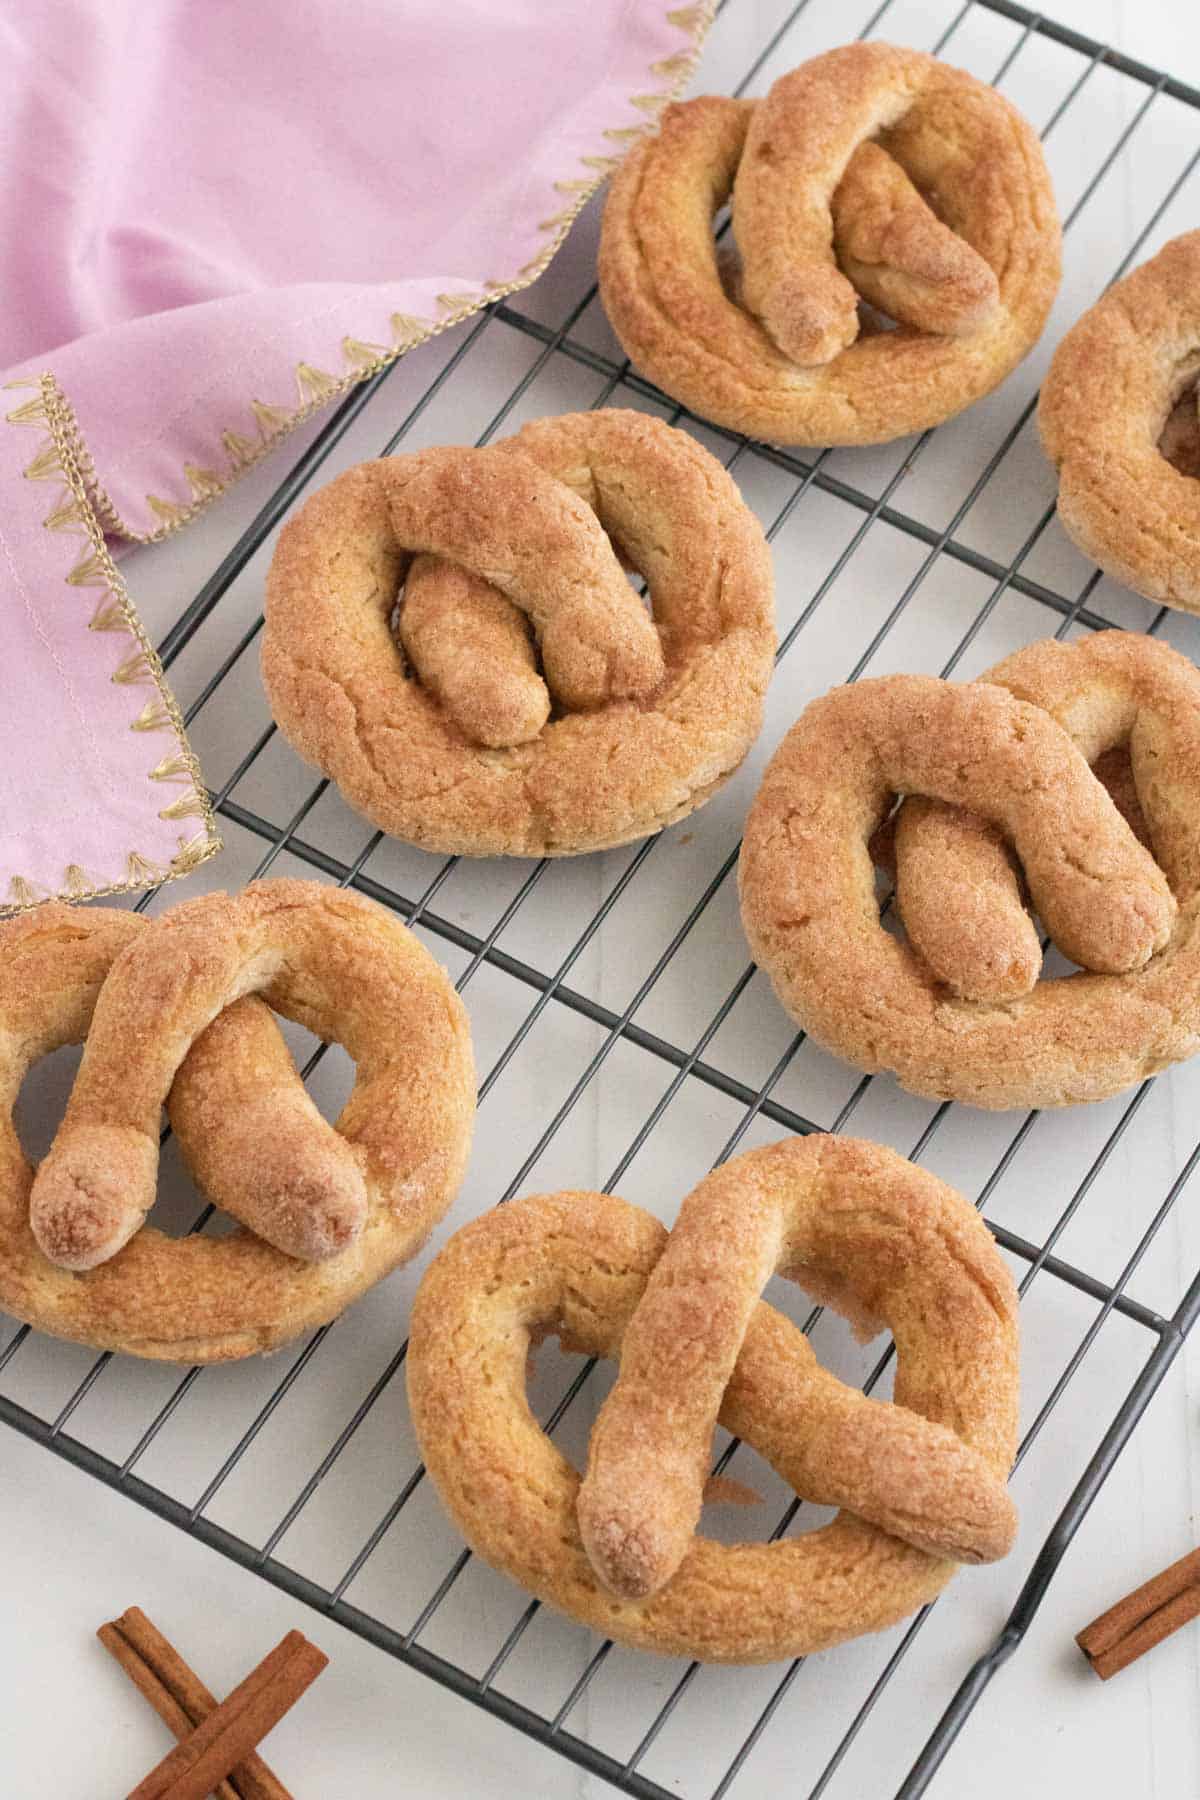 Six cinnamon sugar-coated pretzels on a cooling rack.